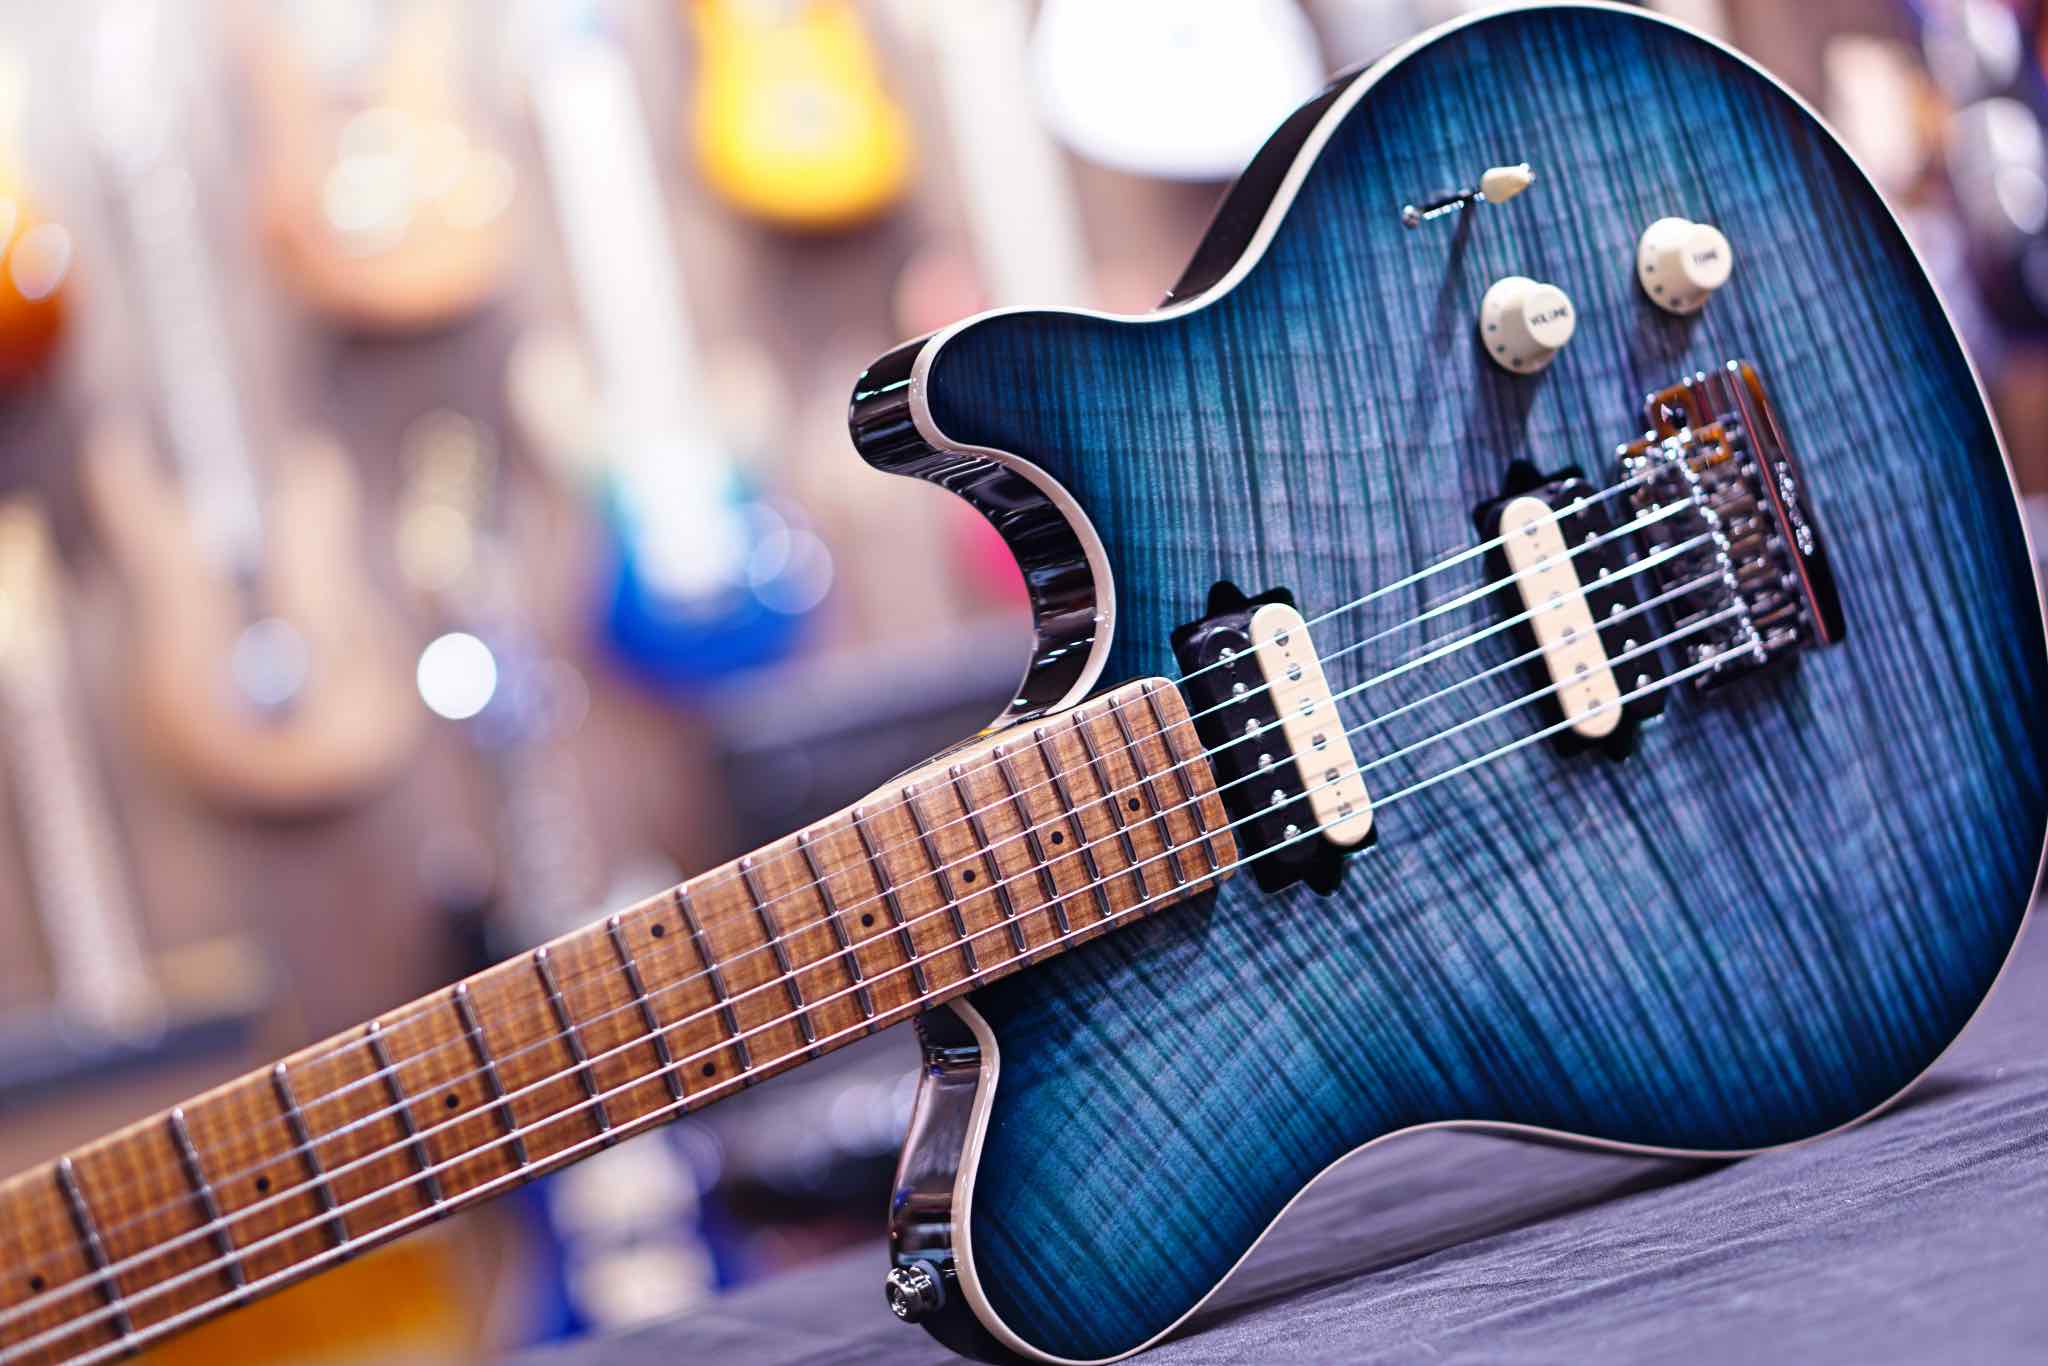 Music Man Axis Super Sport Electric Guitar - Yucatan Blue Flame G98155 - HIENDGUITAR   Musicman GUITAR